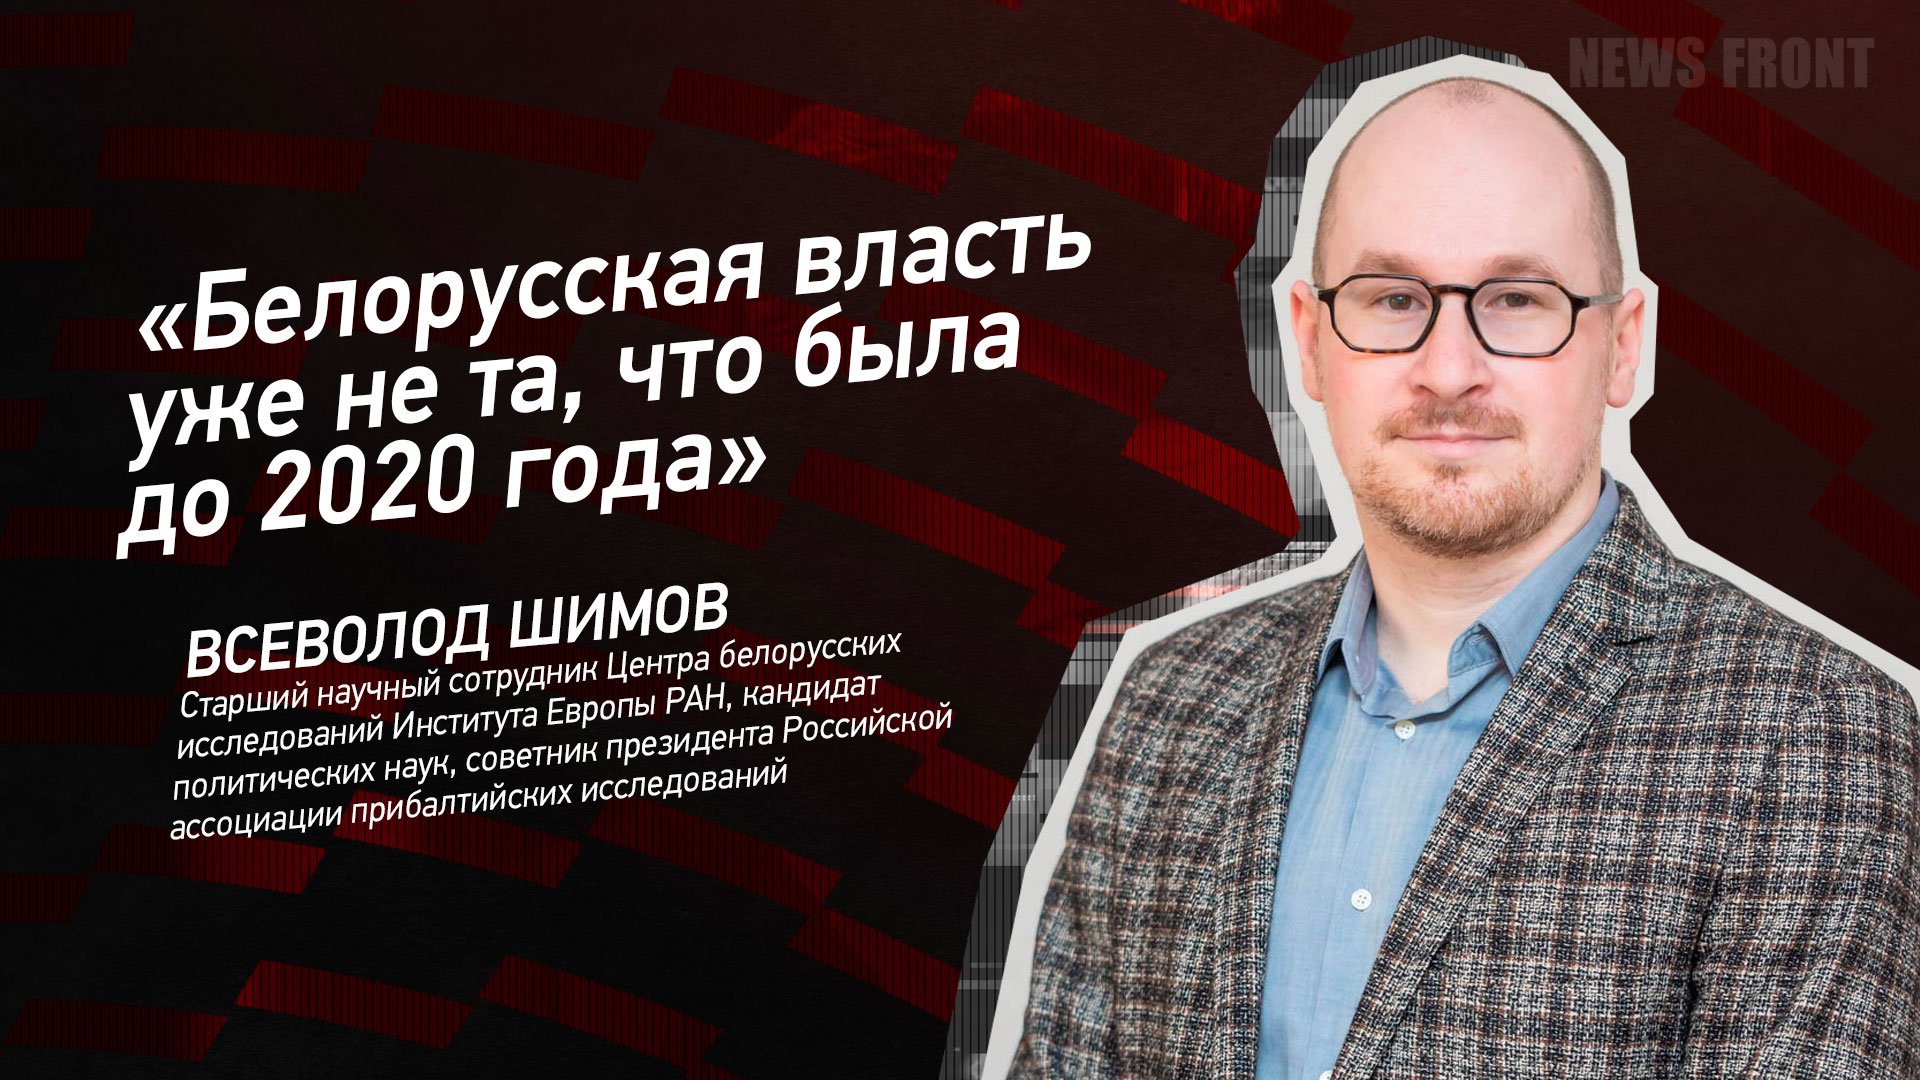 "Белорусская власть уже не та, что была до 2020 года" - Всеволод Шимов